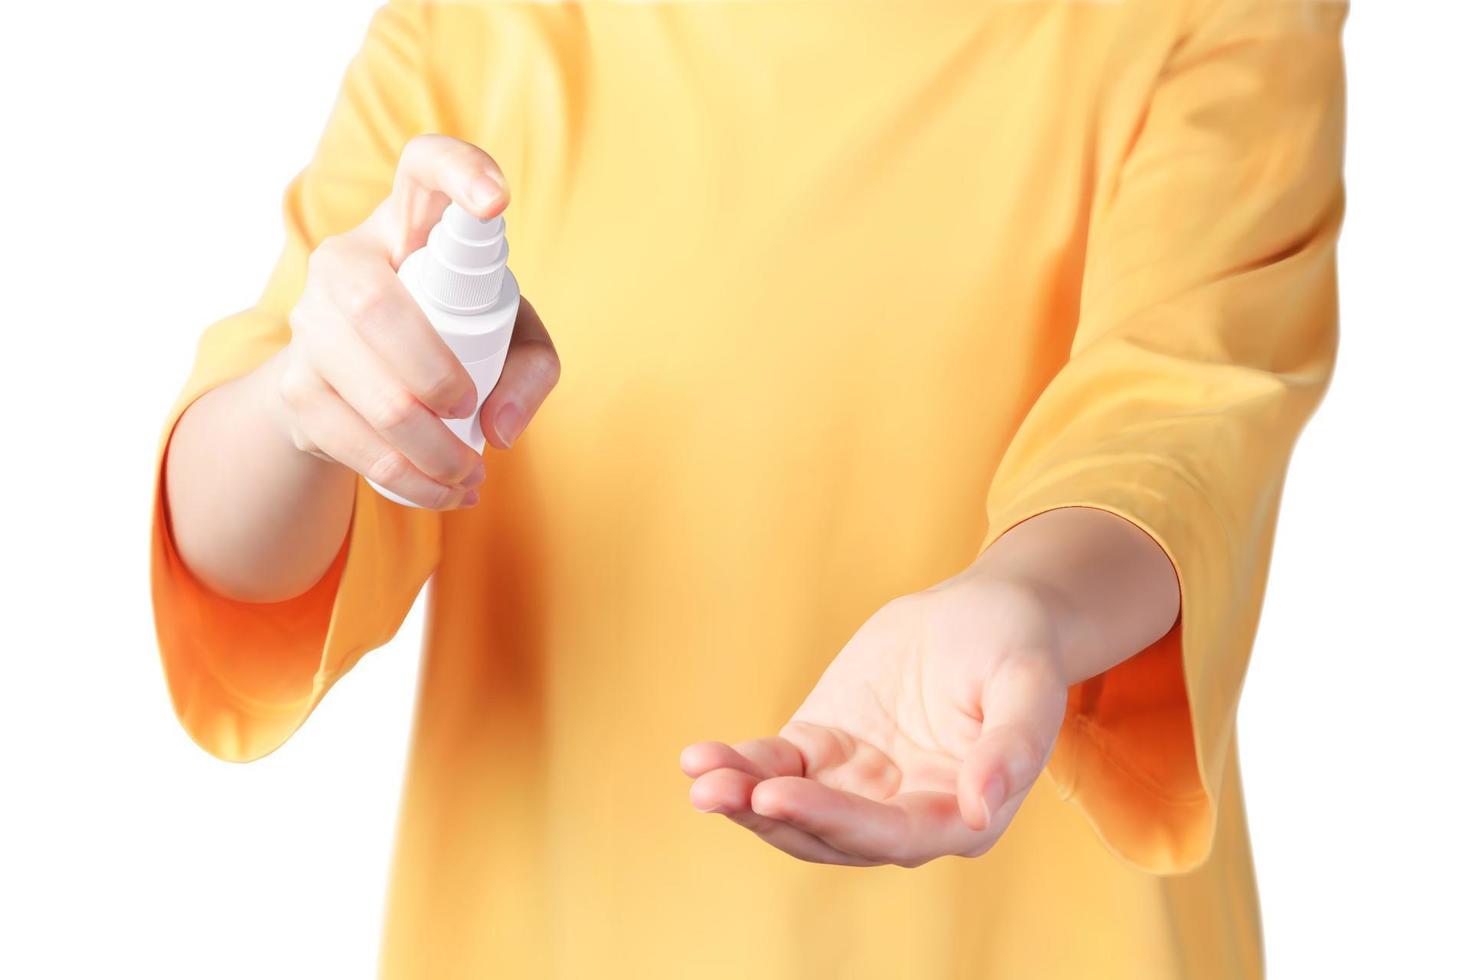 jung Frau mit Hand Desinfektionsmittel sprühen zu sauber ihr Hände, Konzept von extra Vorsichtsmaßnahmen zu verhindern Infektion, 3d Illustration vektor